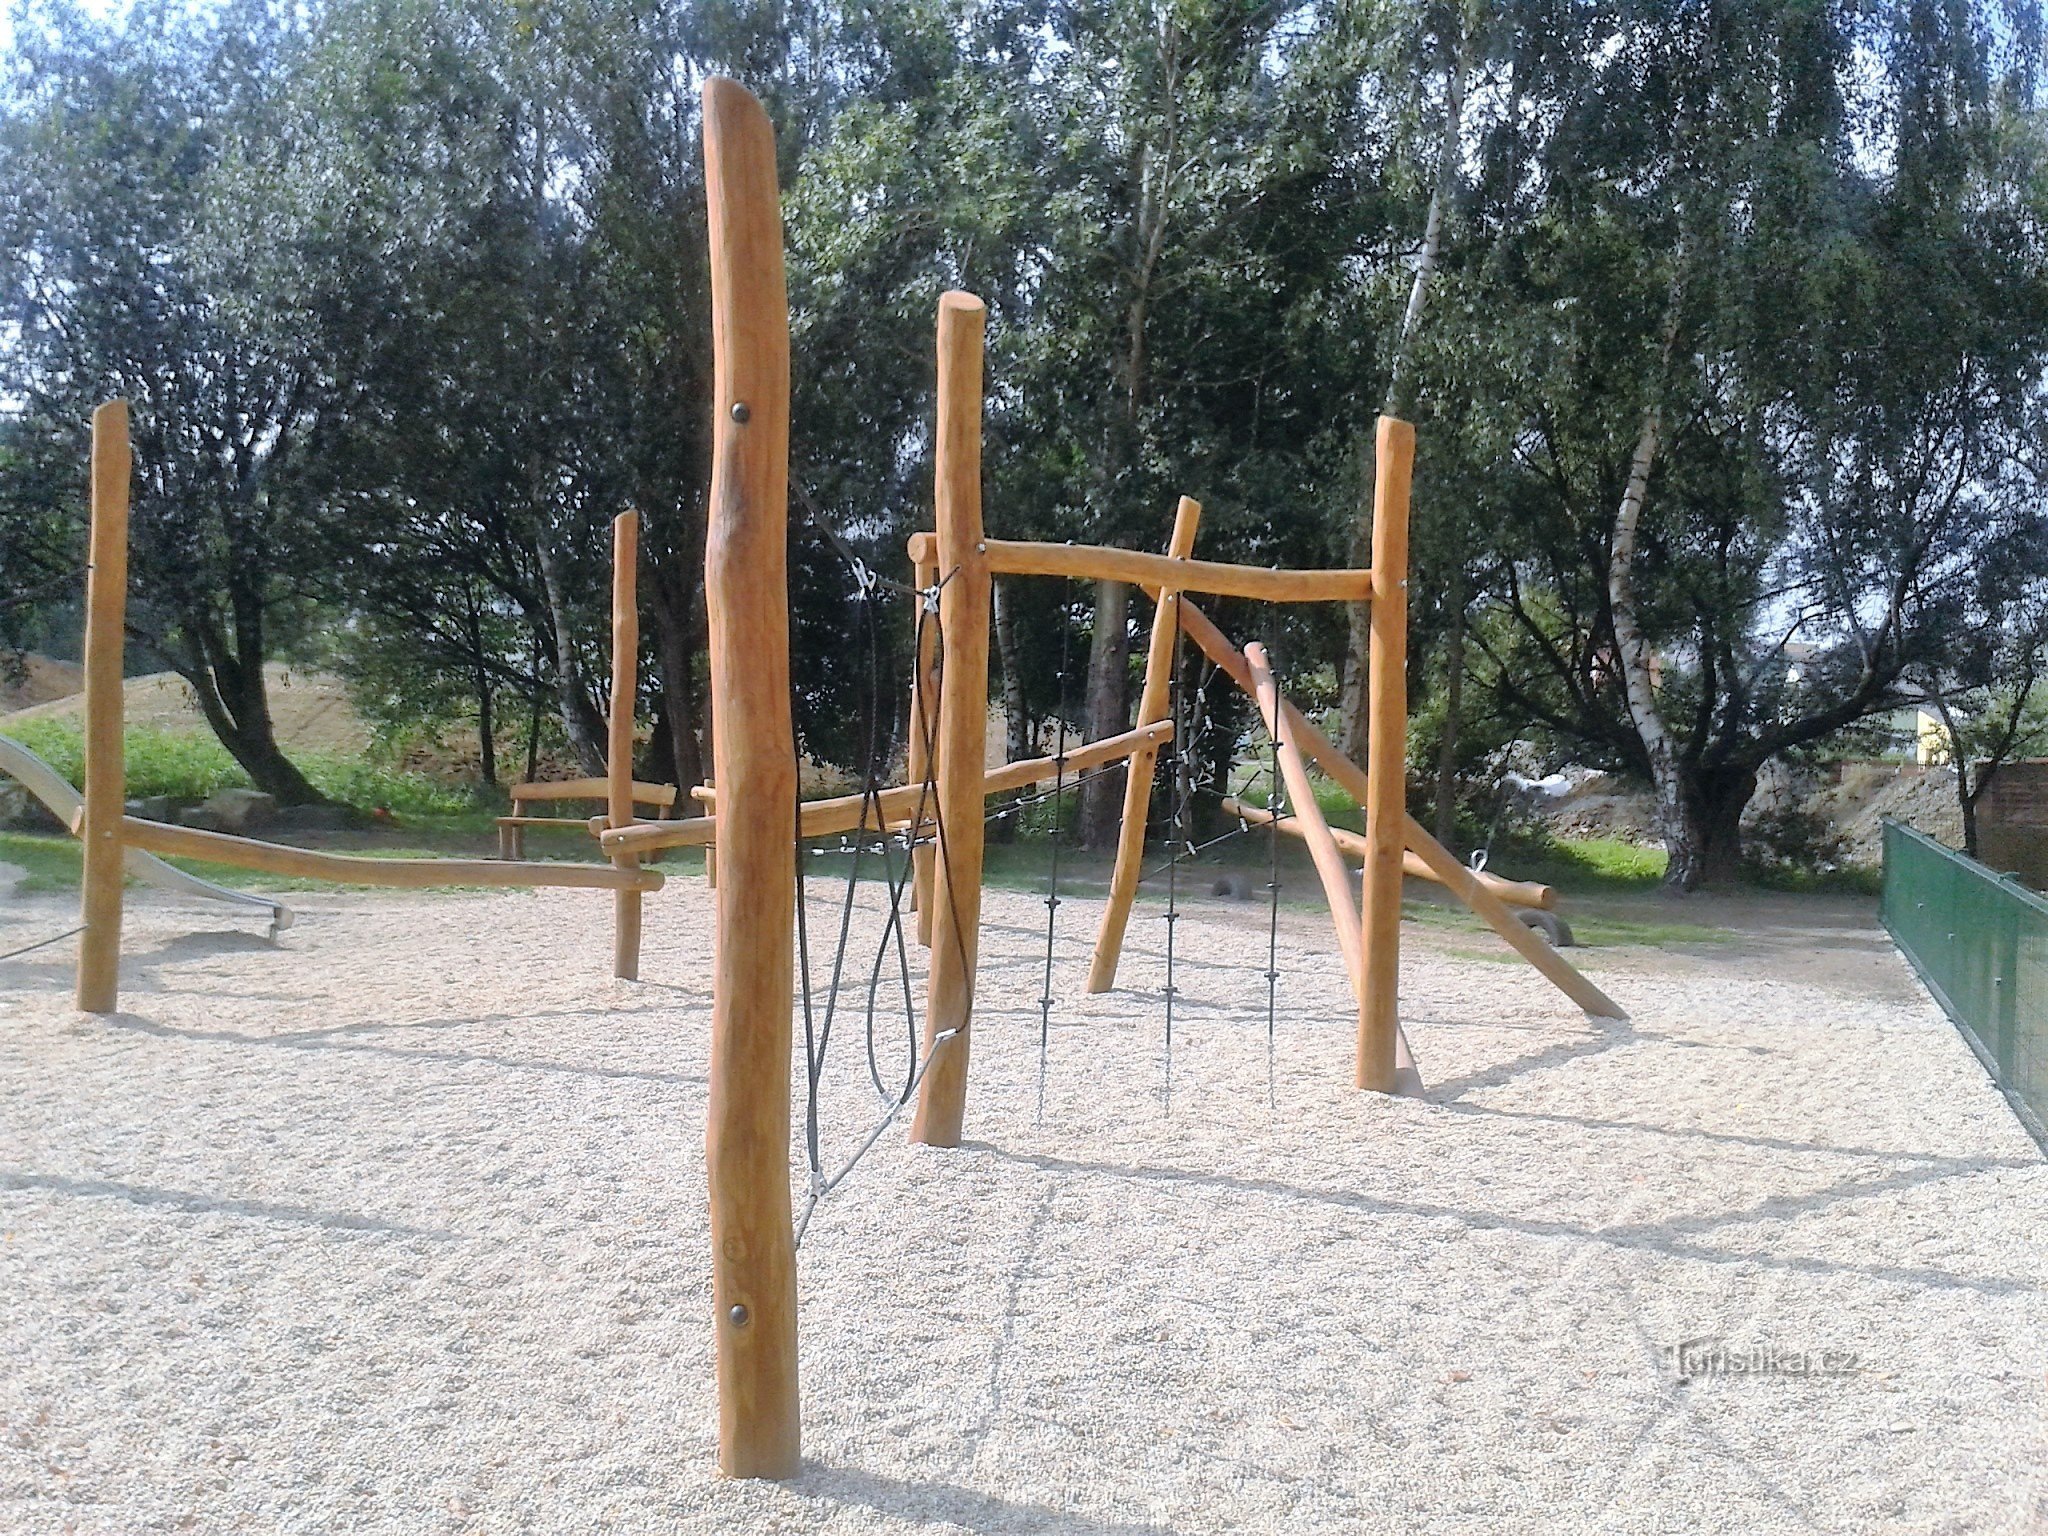 Zábřeh - Parque infantil Oborník (novo para todas as categorias de crianças)